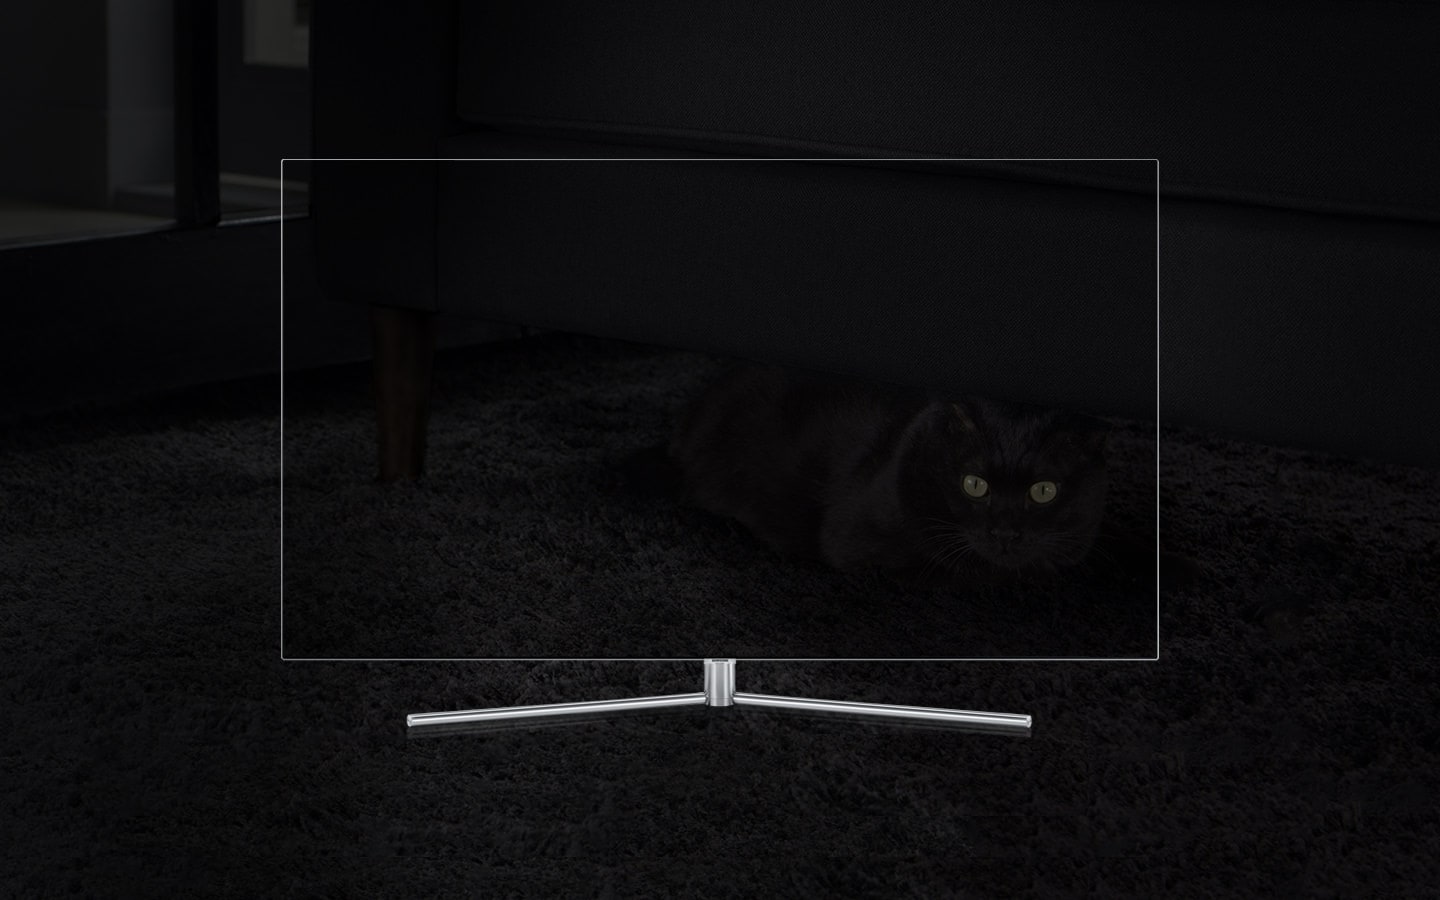 QLED TV 제품이 정면으로 놓여져 있고 화면 안에는 검정 카페트에 있는 검정 쇼파 아래 검정색 고양이가 숨어 있는 모습이 흐리게 보여집니다.